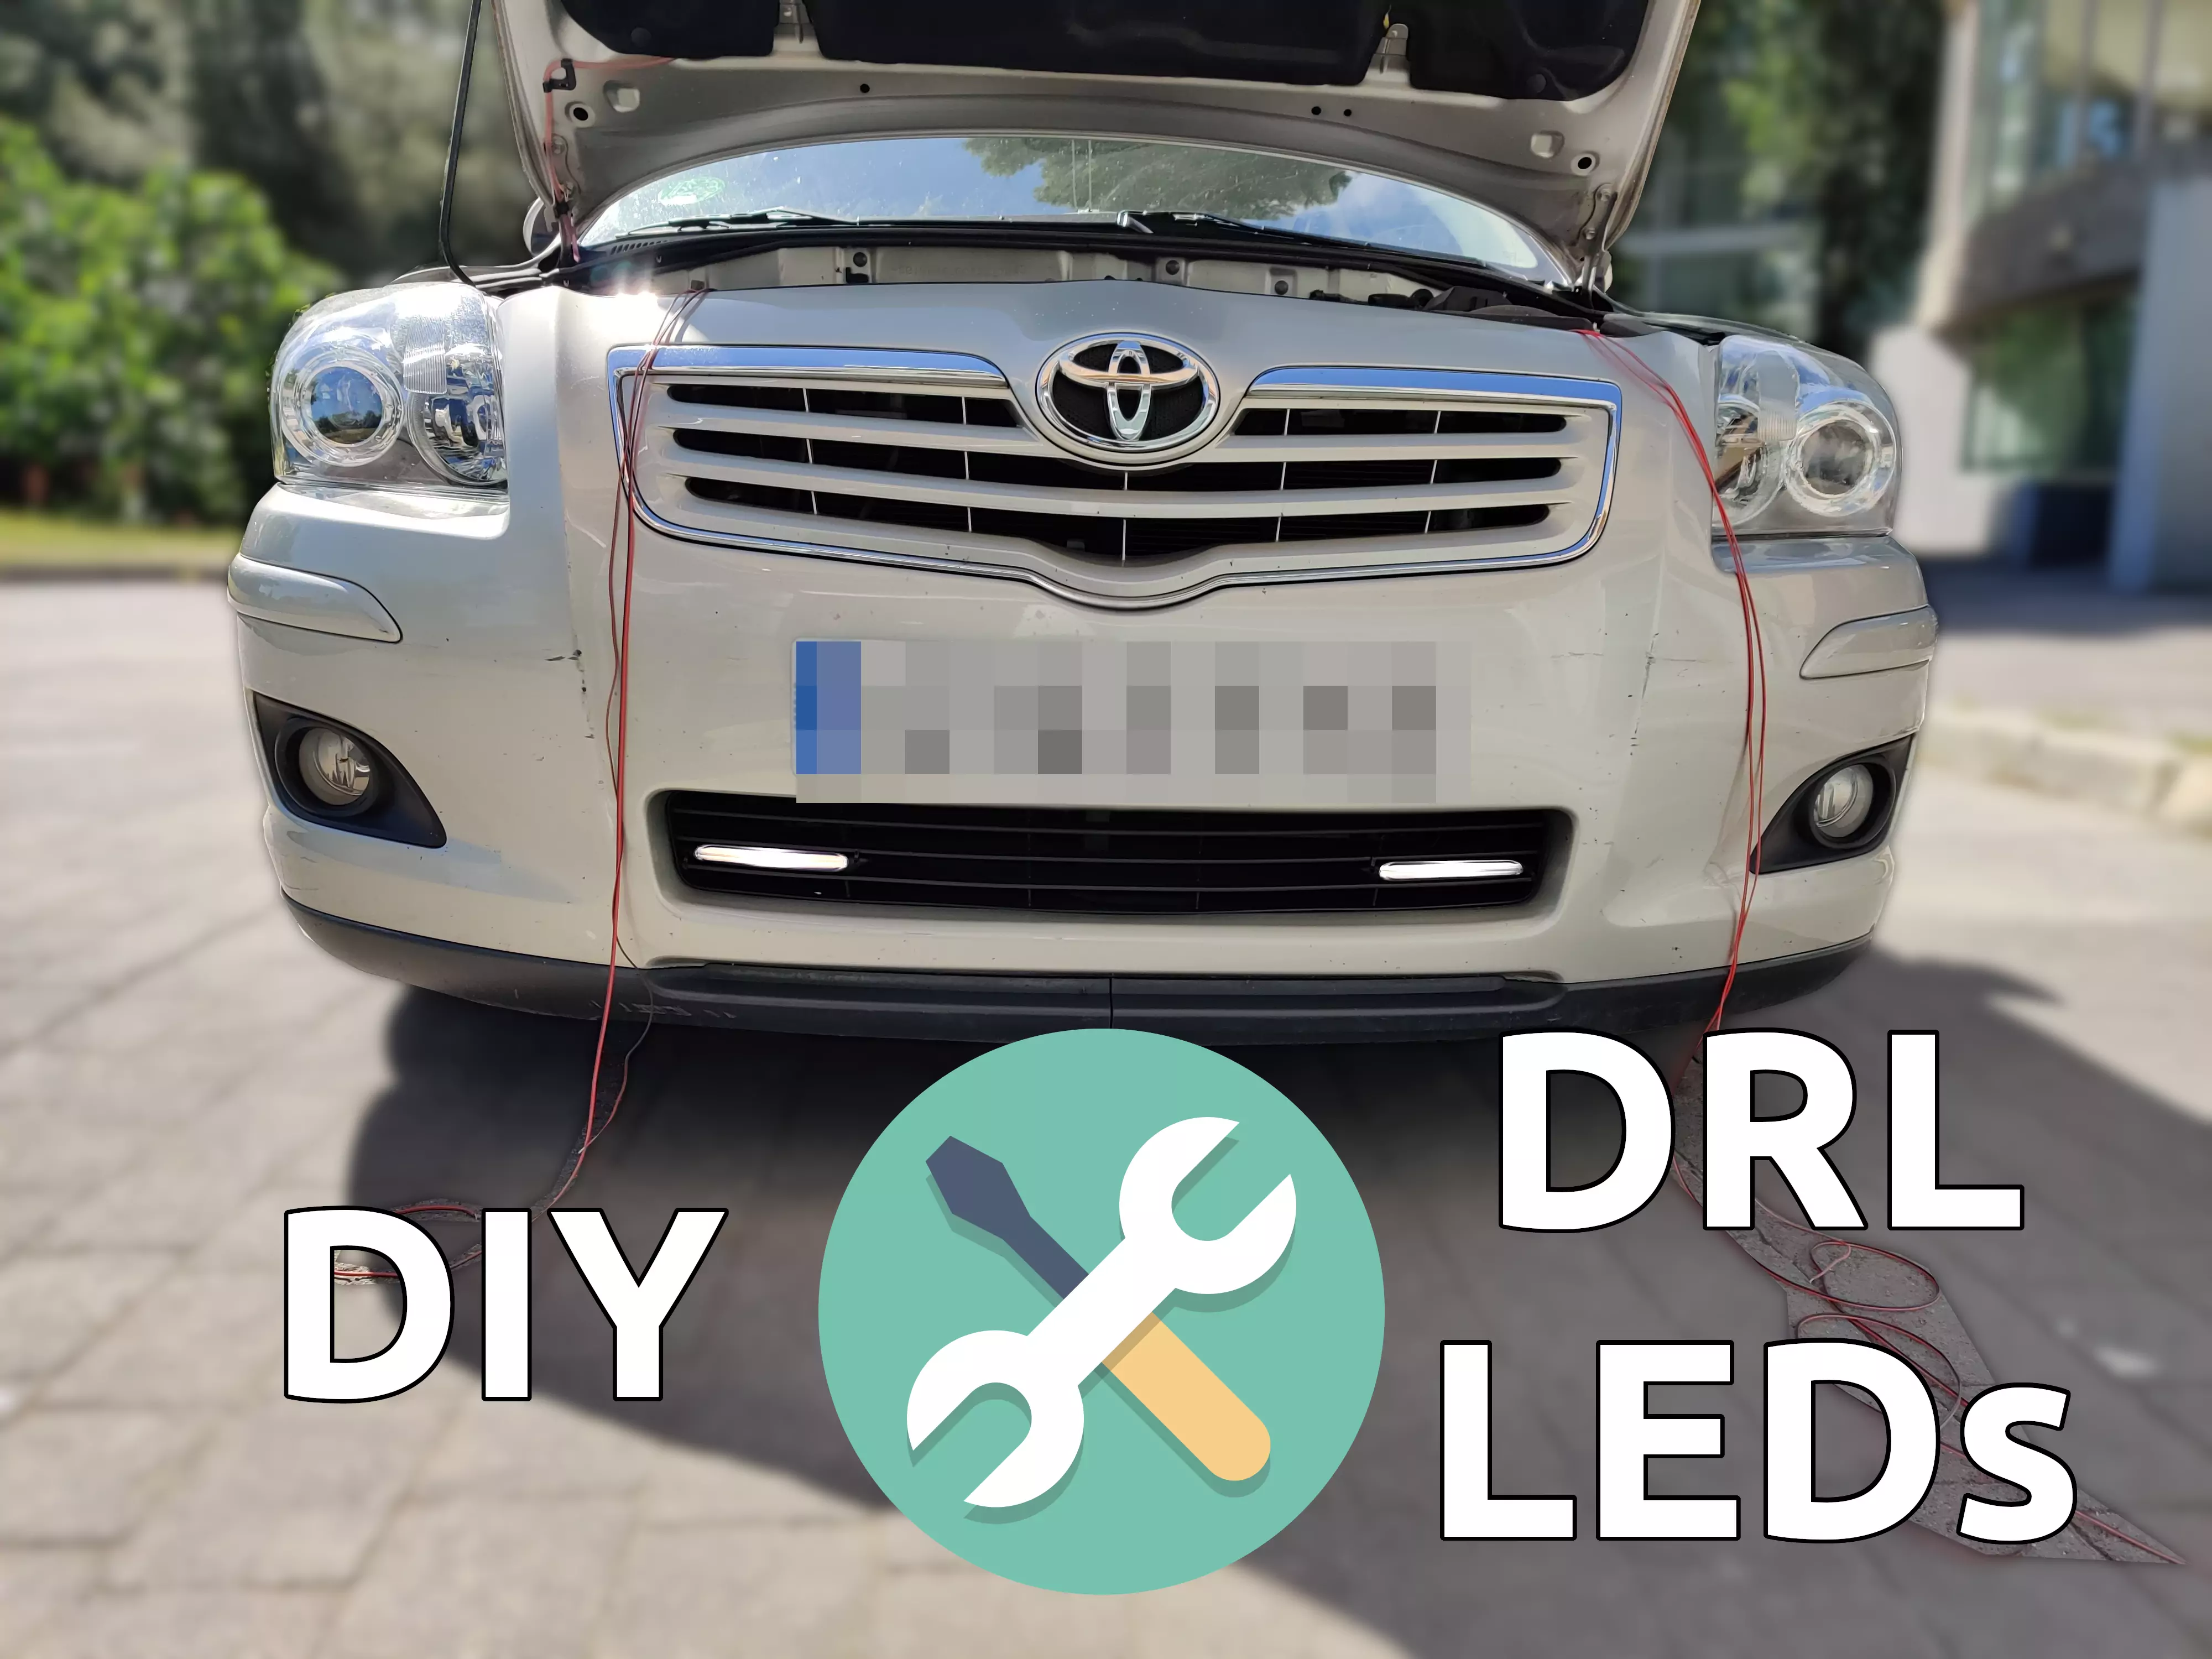 Increíble ataque noche DIY: DRL (luces diurnas) reversibles para cualquier coche | Javinator9889 -  Blog